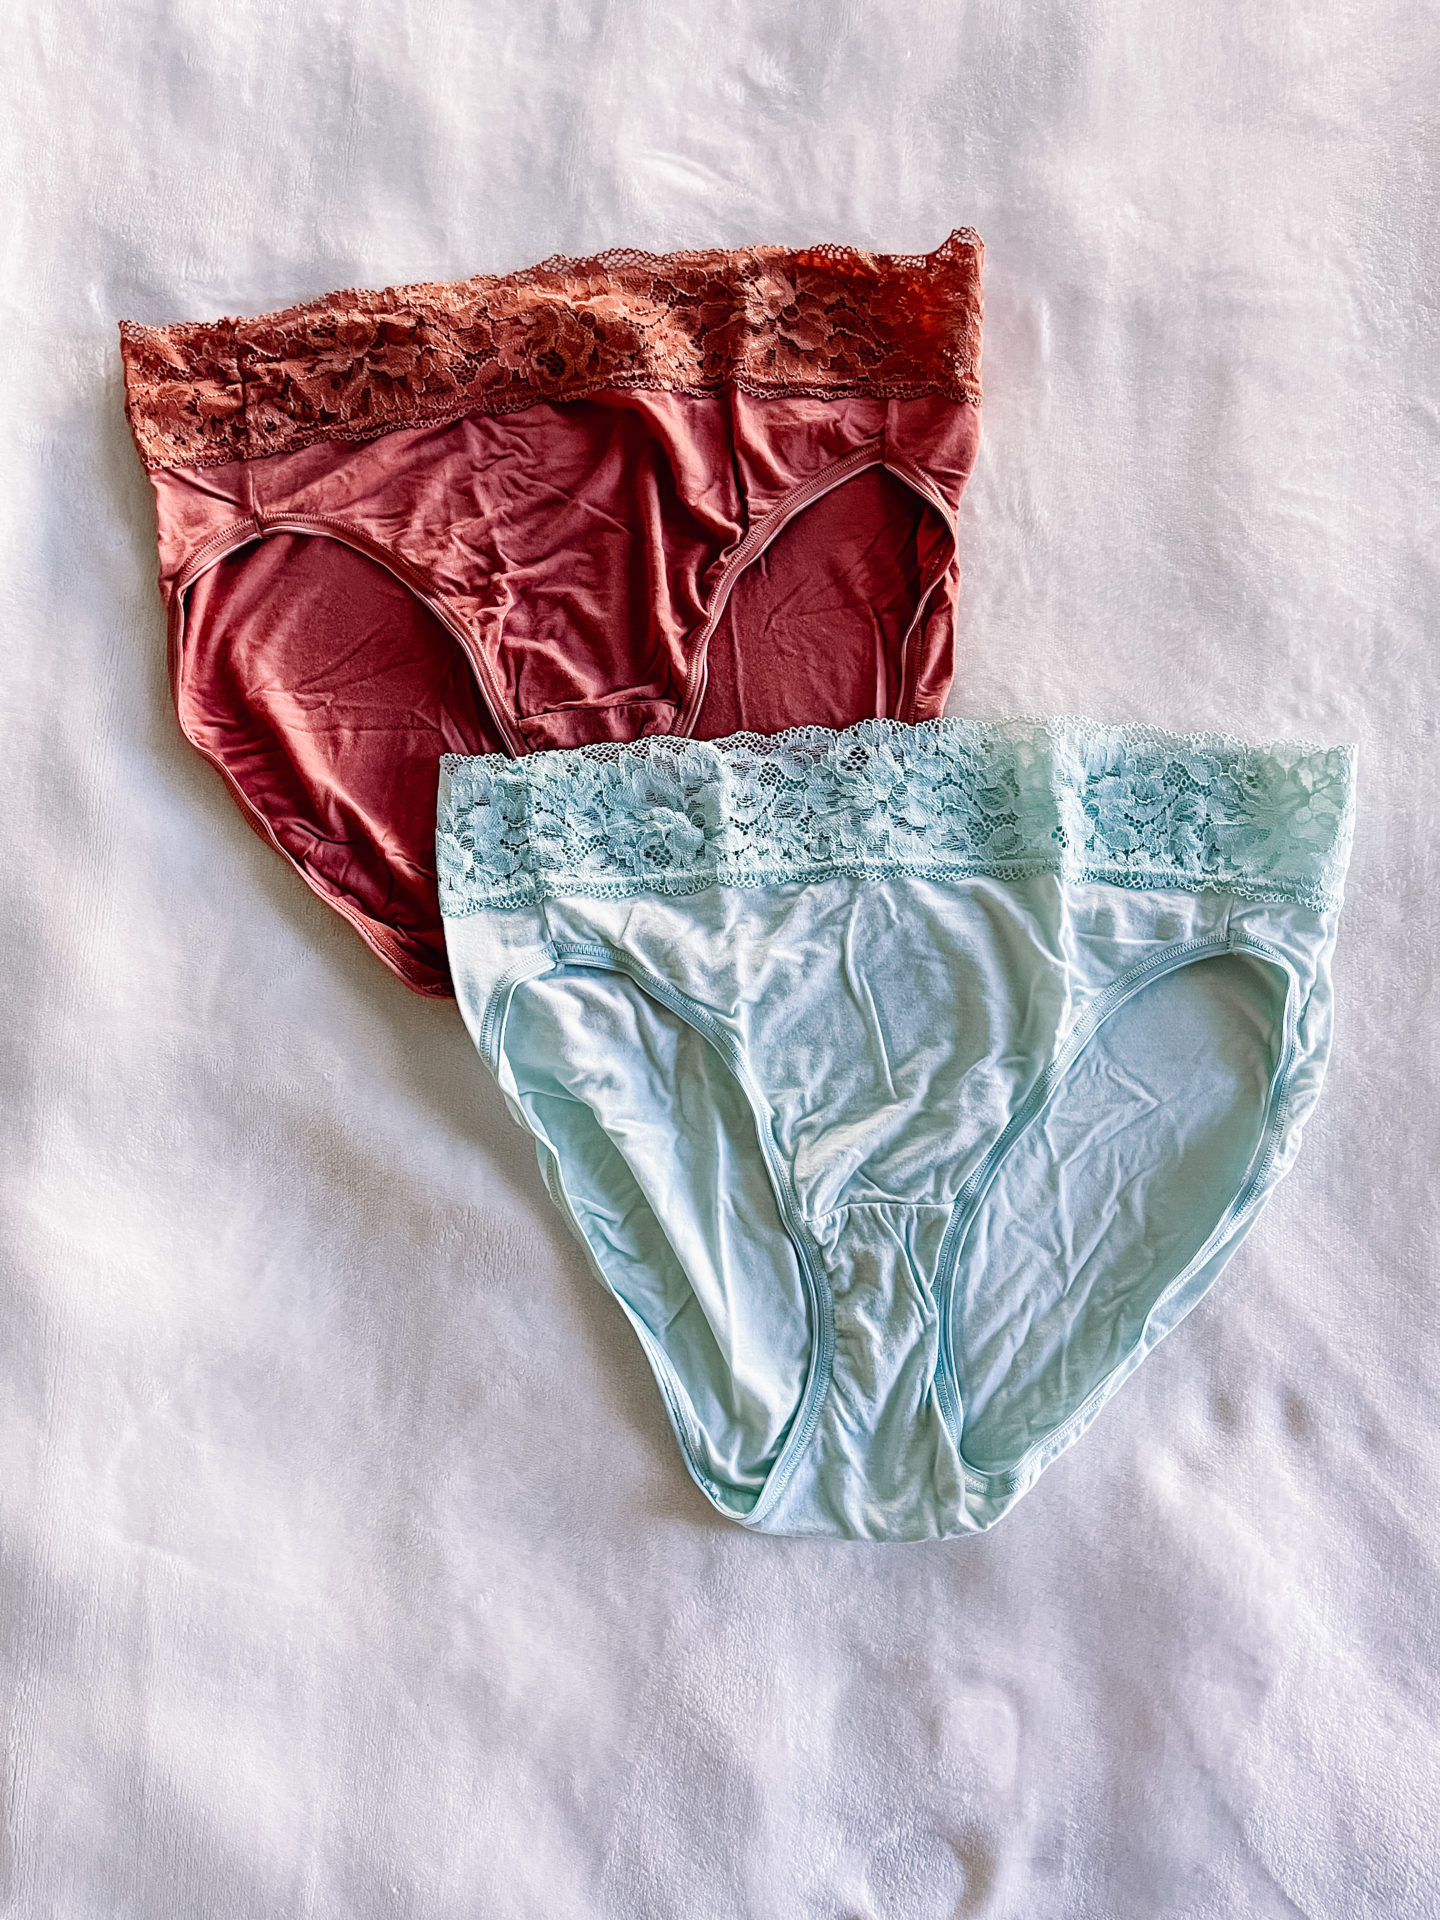 Dirty little secret' hidden in Aussie womens' underwear drawers